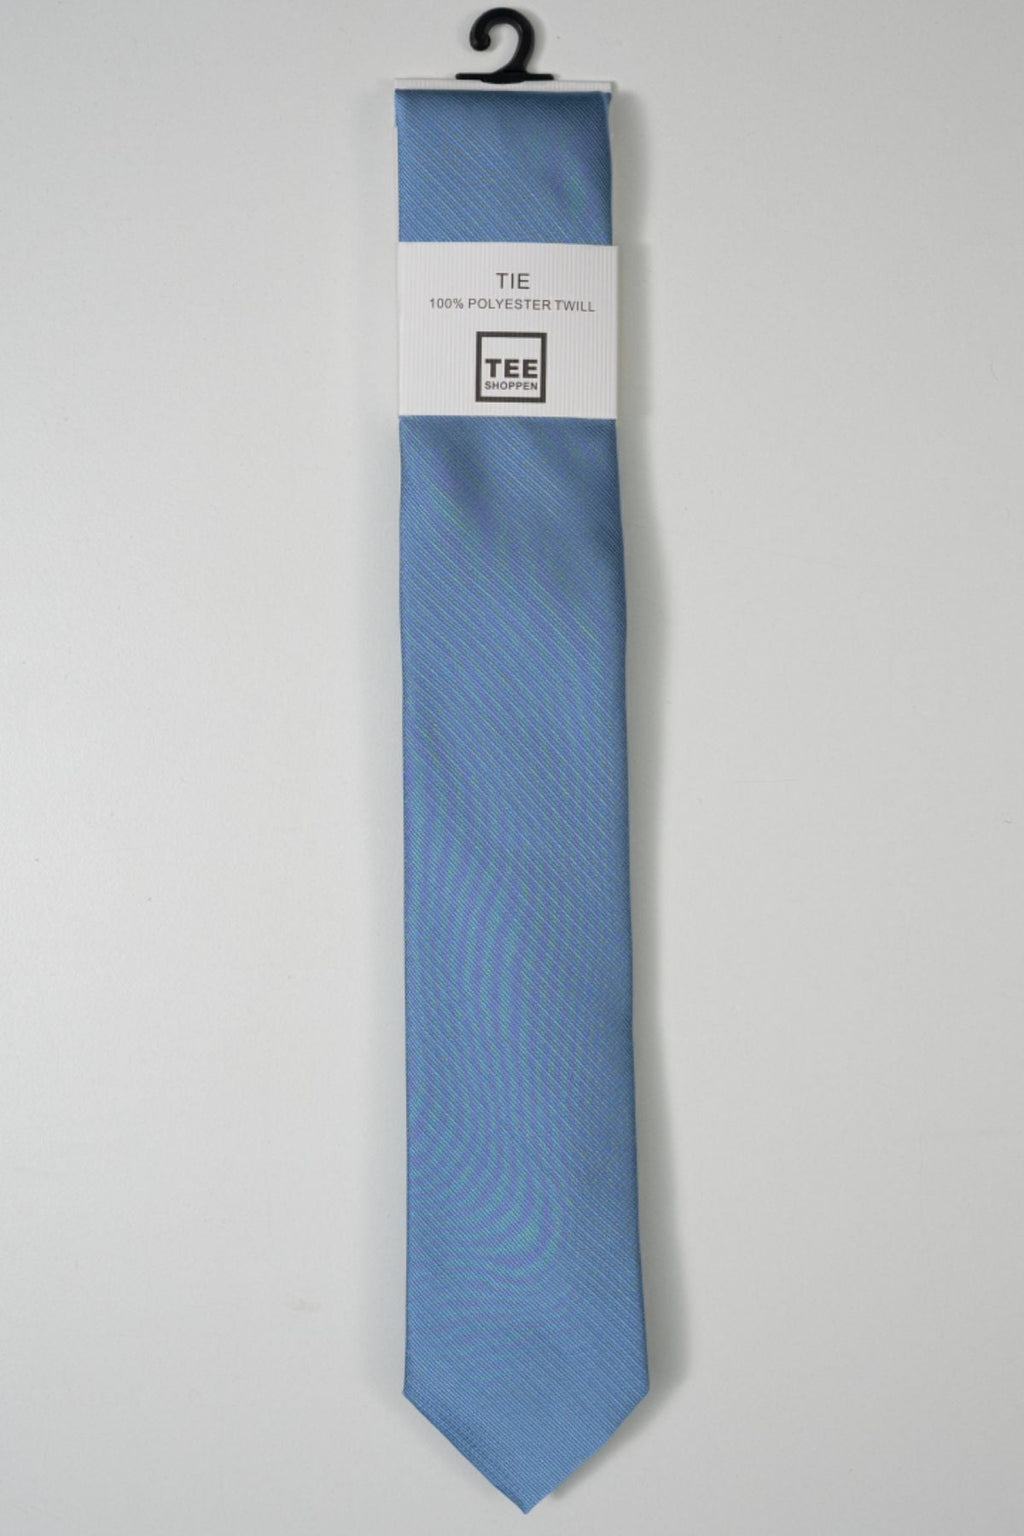 Kaklaraištis - šviesiai mėlynas